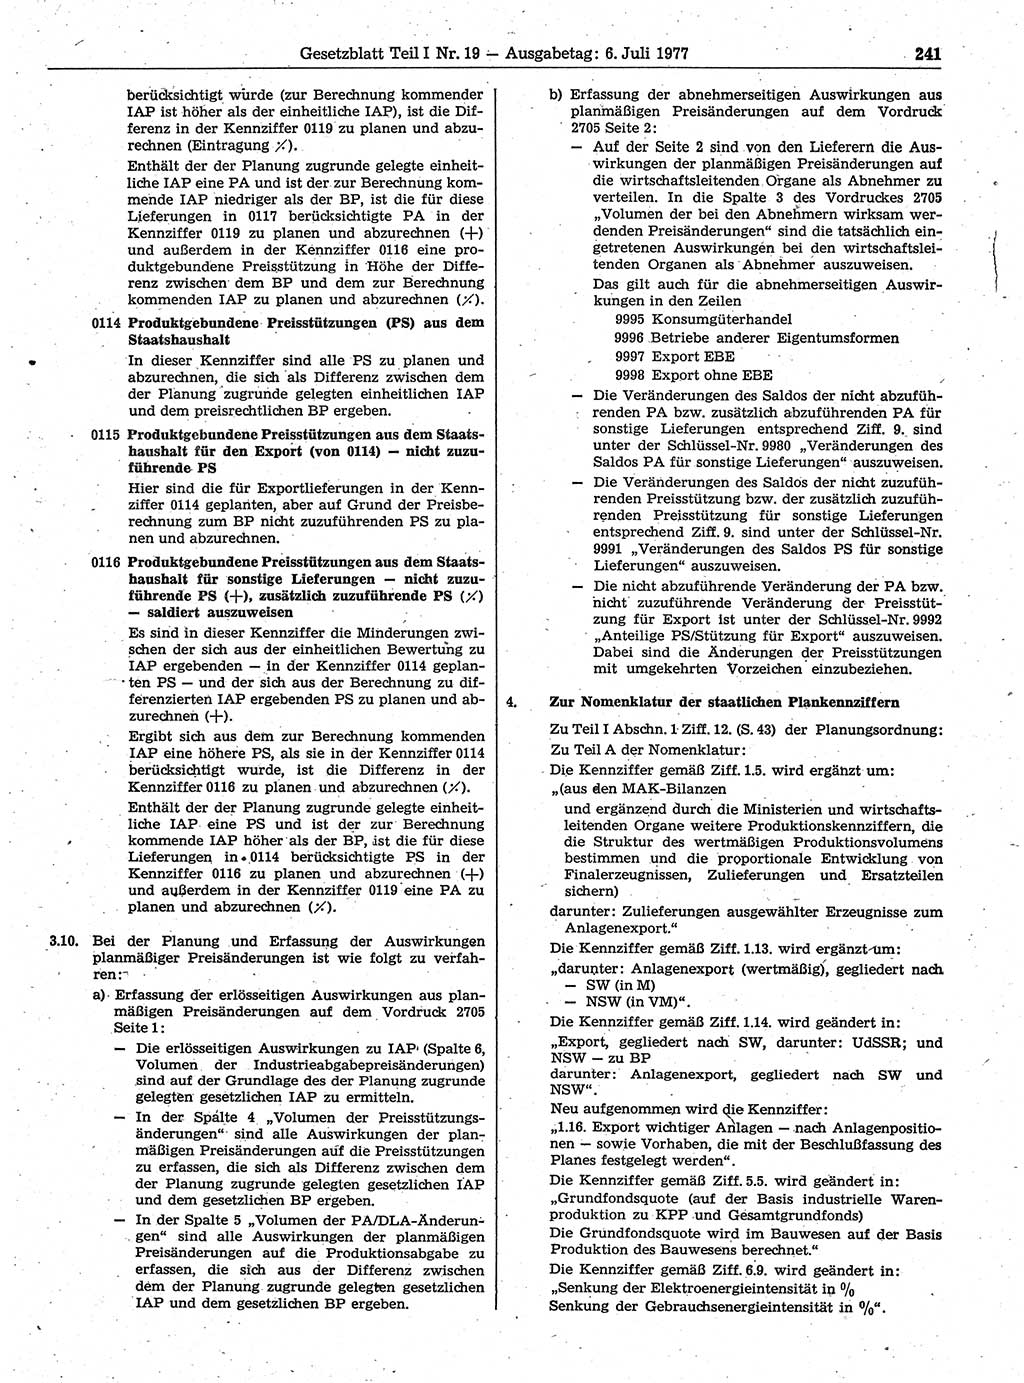 Gesetzblatt (GBl.) der Deutschen Demokratischen Republik (DDR) Teil Ⅰ 1977, Seite 241 (GBl. DDR Ⅰ 1977, S. 241)